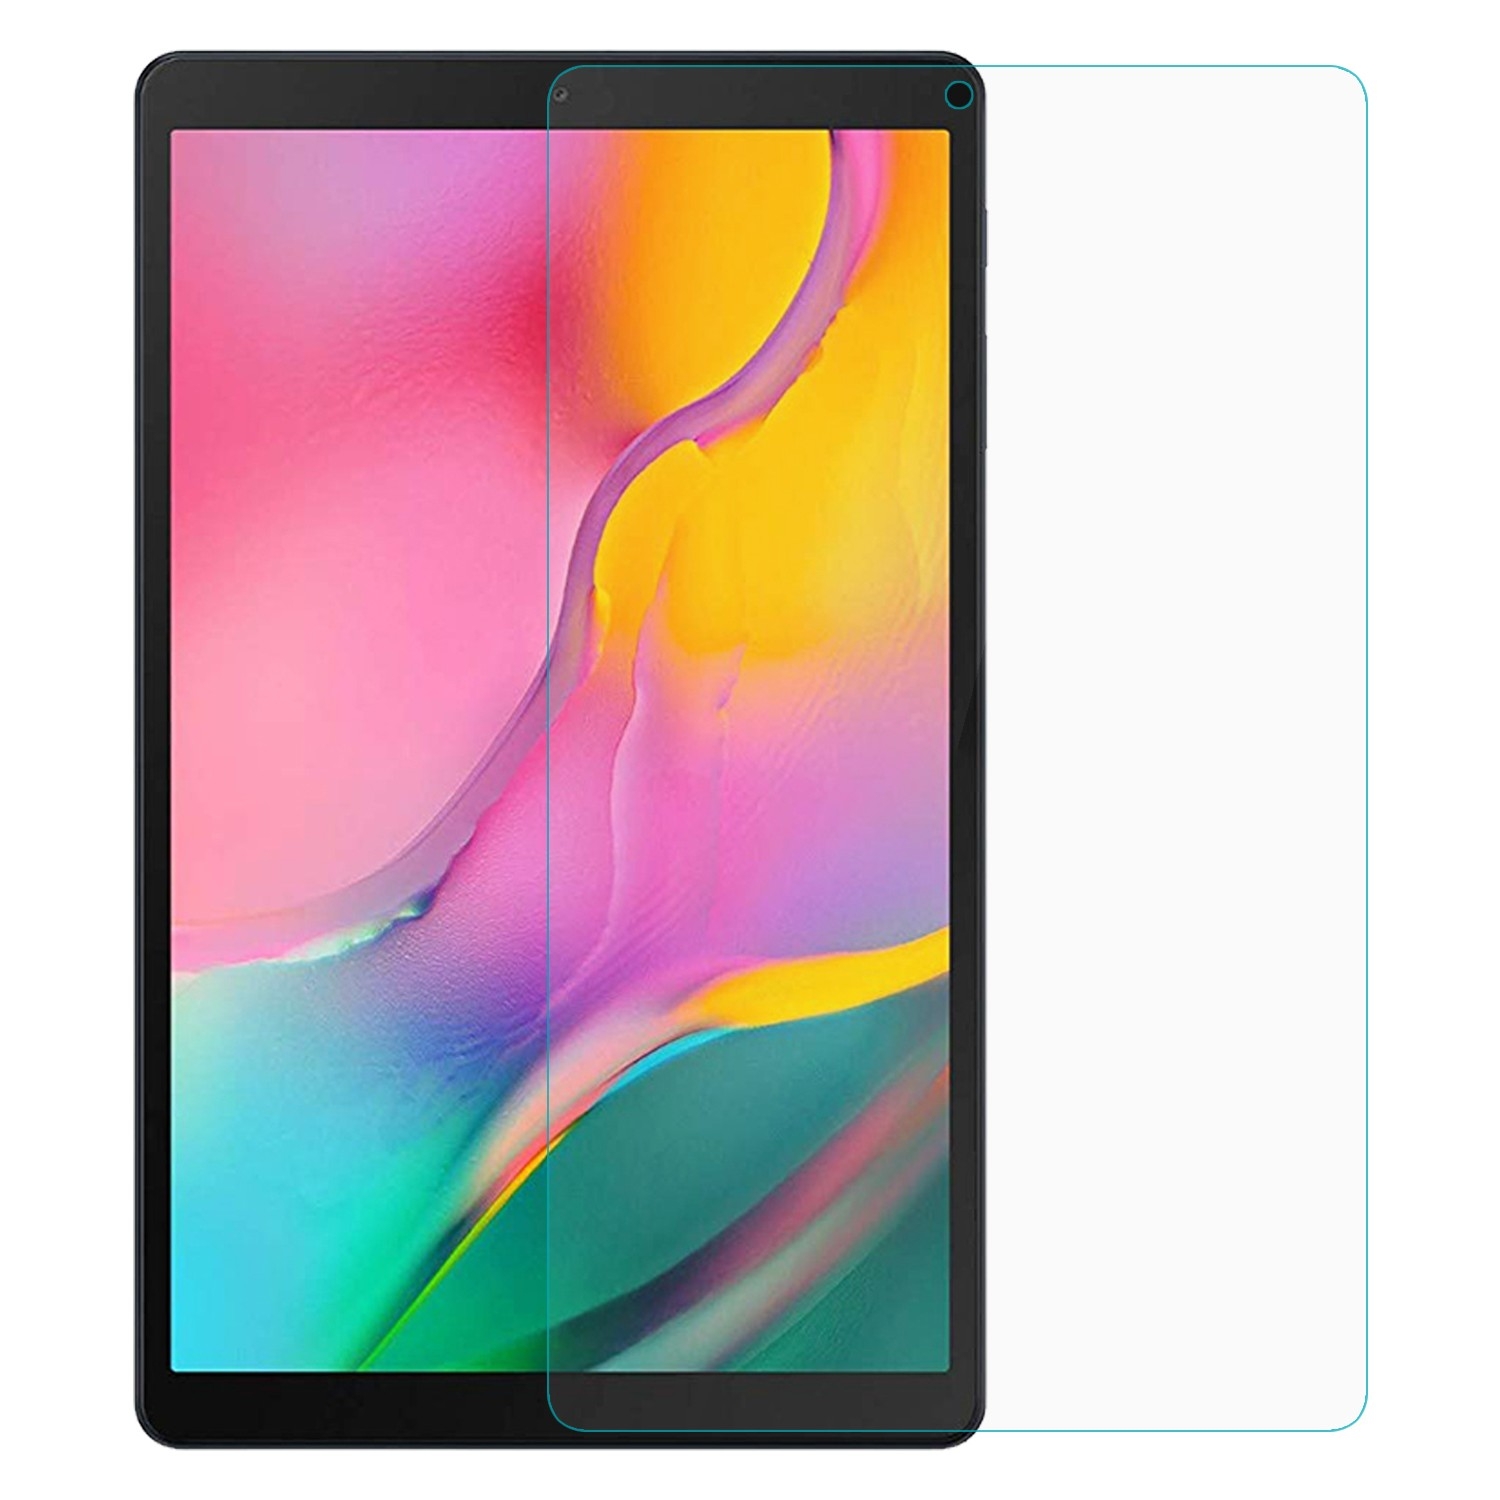 KNY Samsung Galaxy Tab A 10.1 n 2019 T510 in Nano Esnek Cam Ekran Koruyucu effaf 